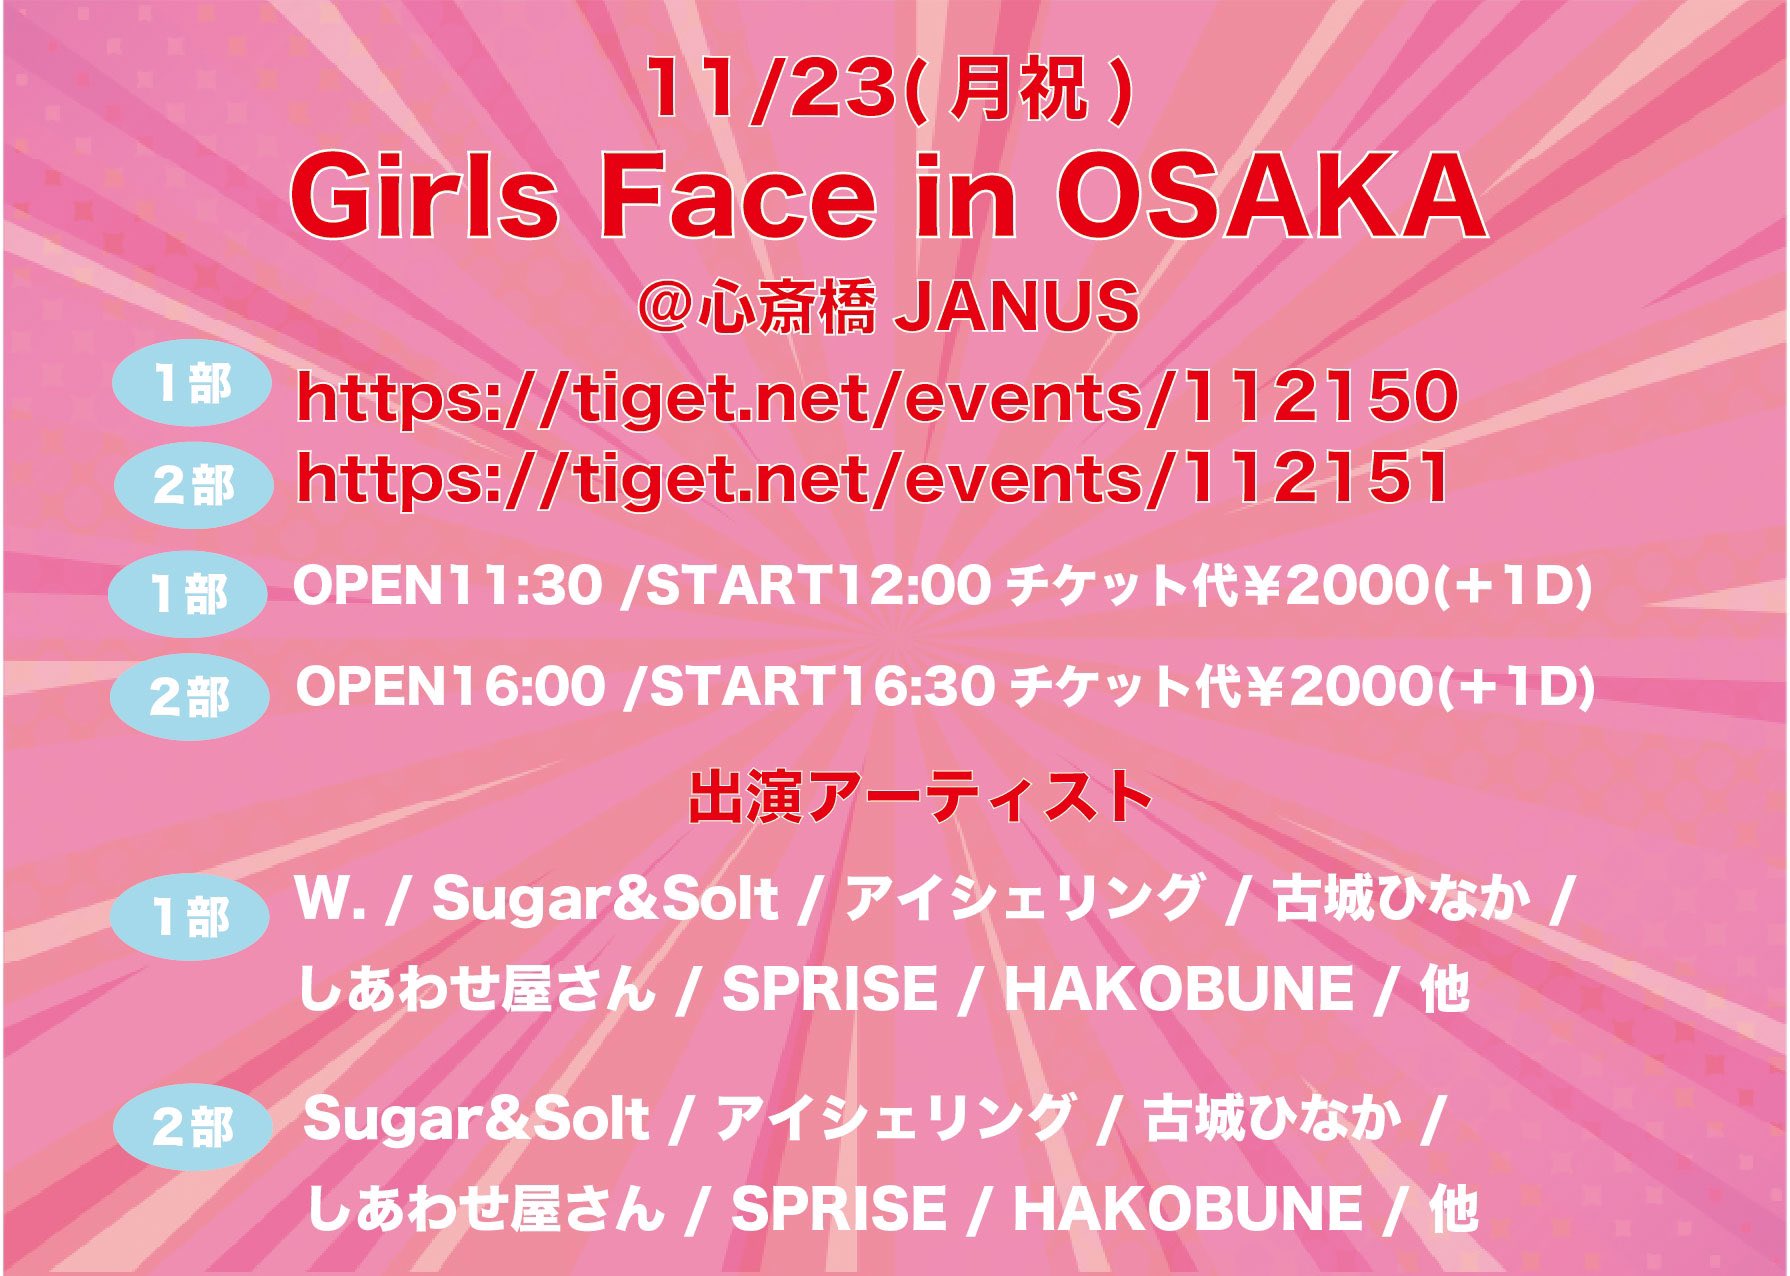 Girls Face in Osaka